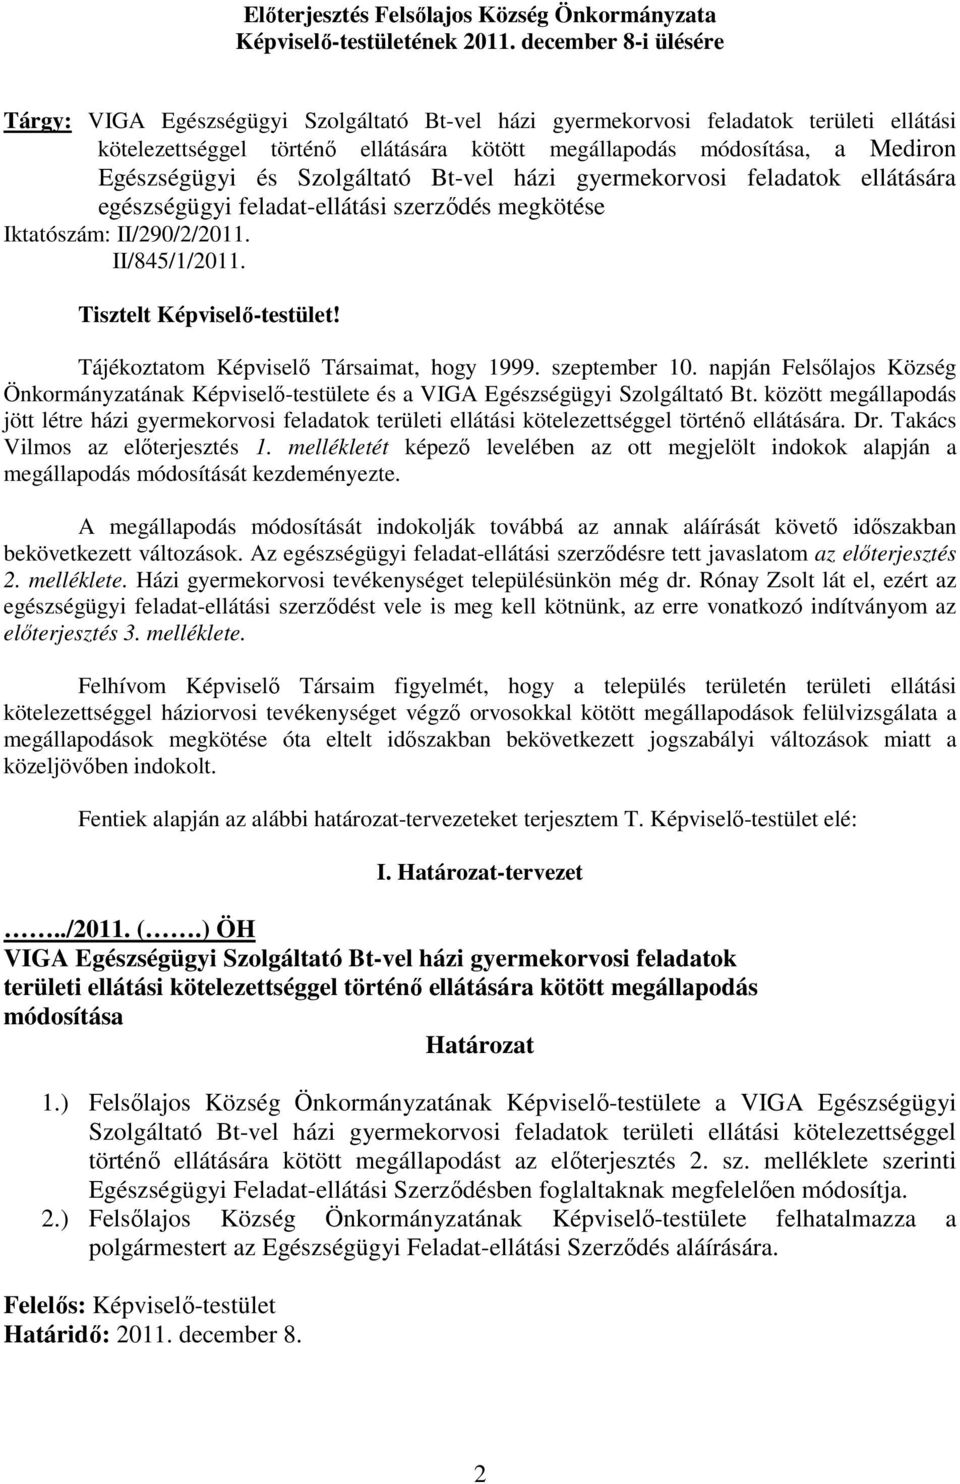 Egészségügyi és Szolgáltató Bt-vel házi gyermekorvosi feladatok ellátására egészségügyi feladat-ellátási szerzıdés megkötése Iktatószám: II/290/2/2011. II/845/1/2011. Tisztelt Képviselı-testület!